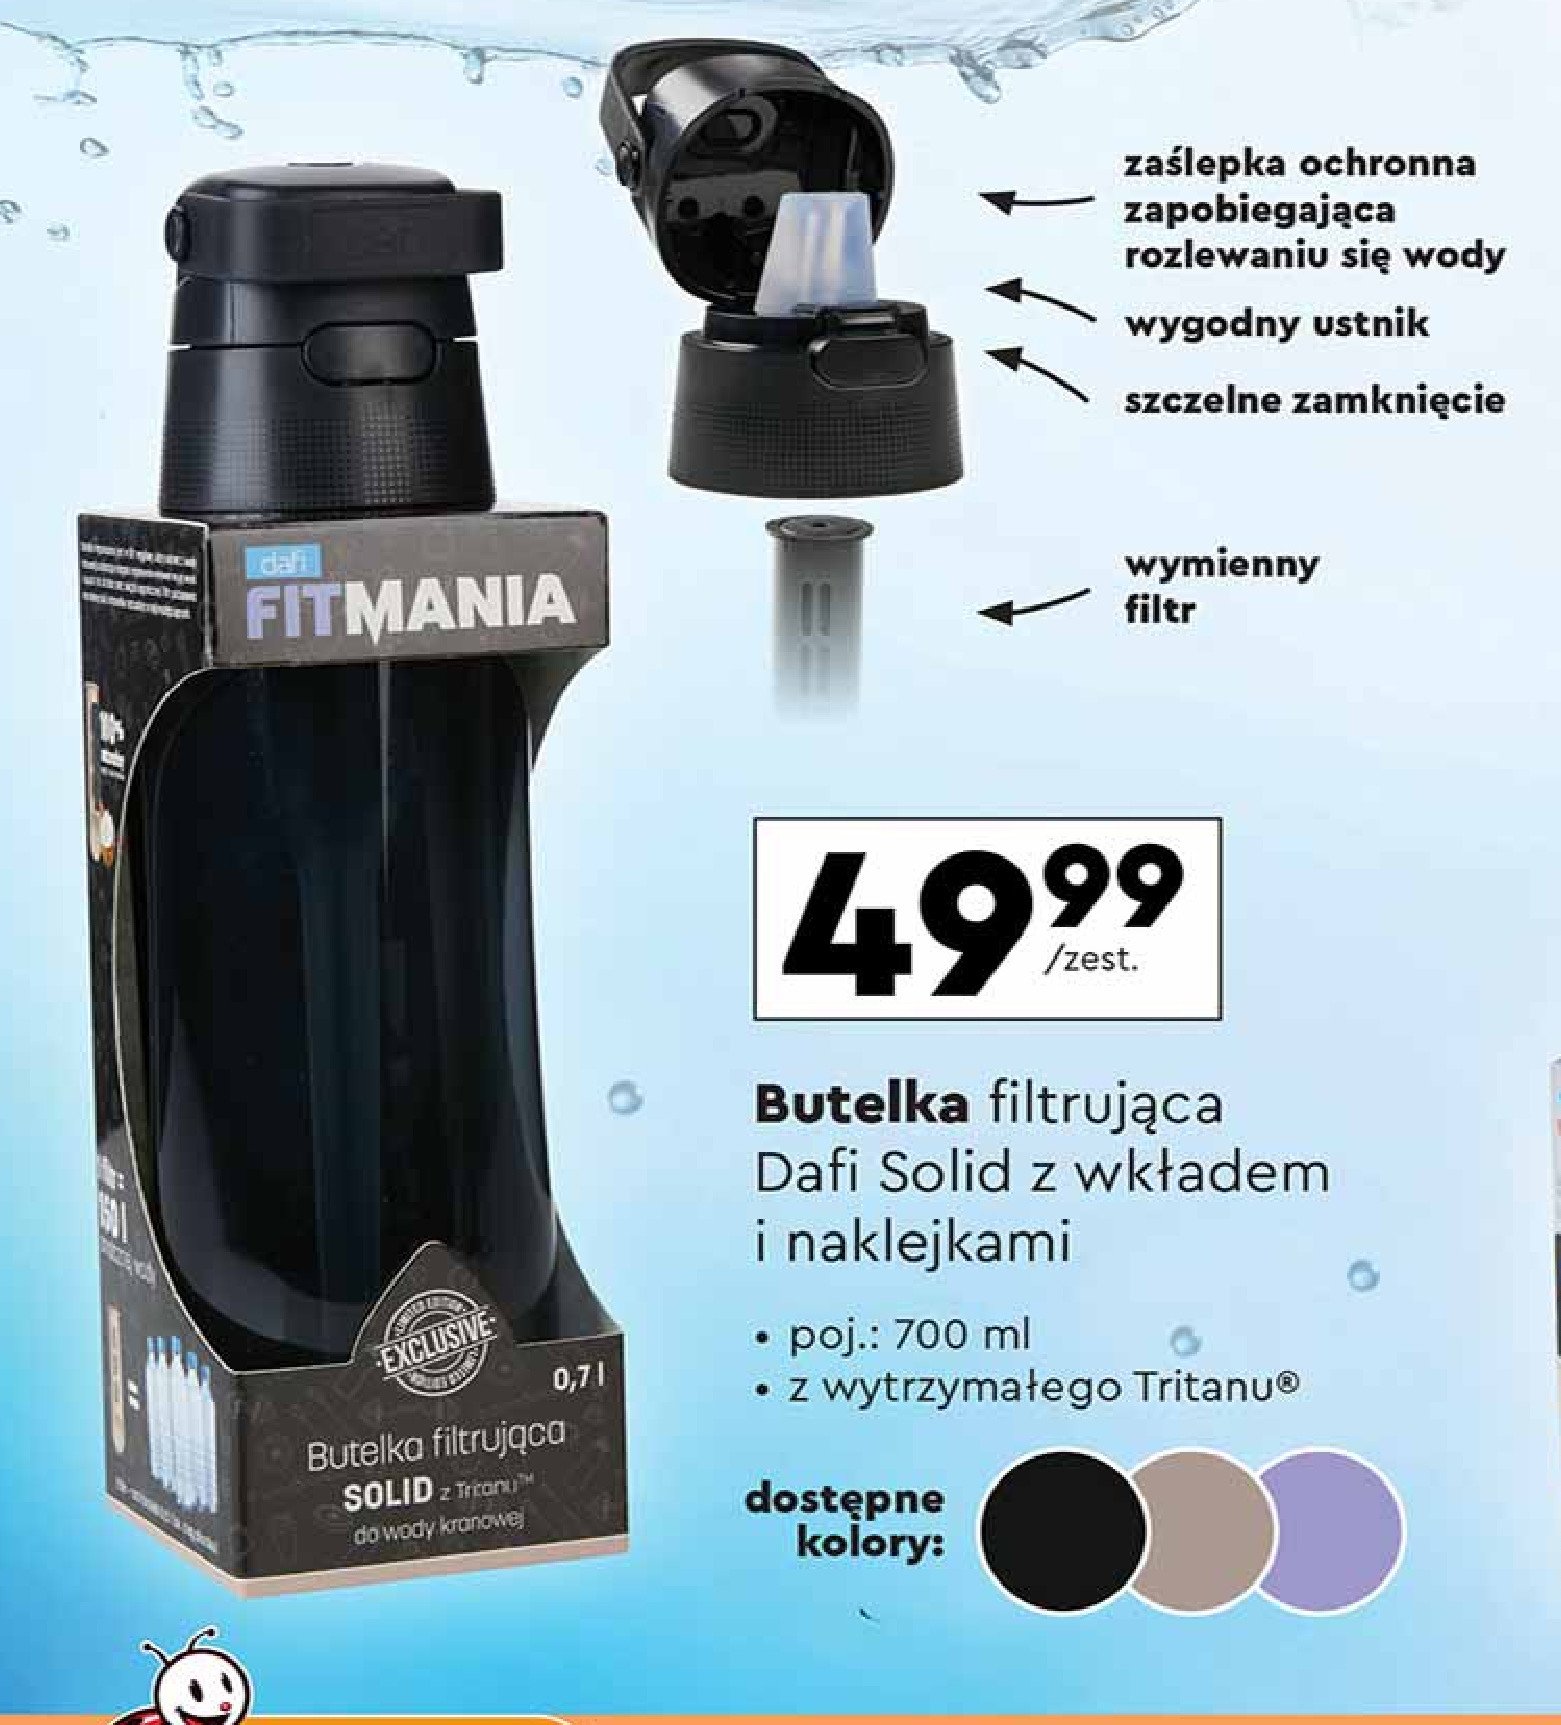 Butelka solid z tritanu filtrująca wodę 700 ml + filtr Dafi promocja w Biedronka